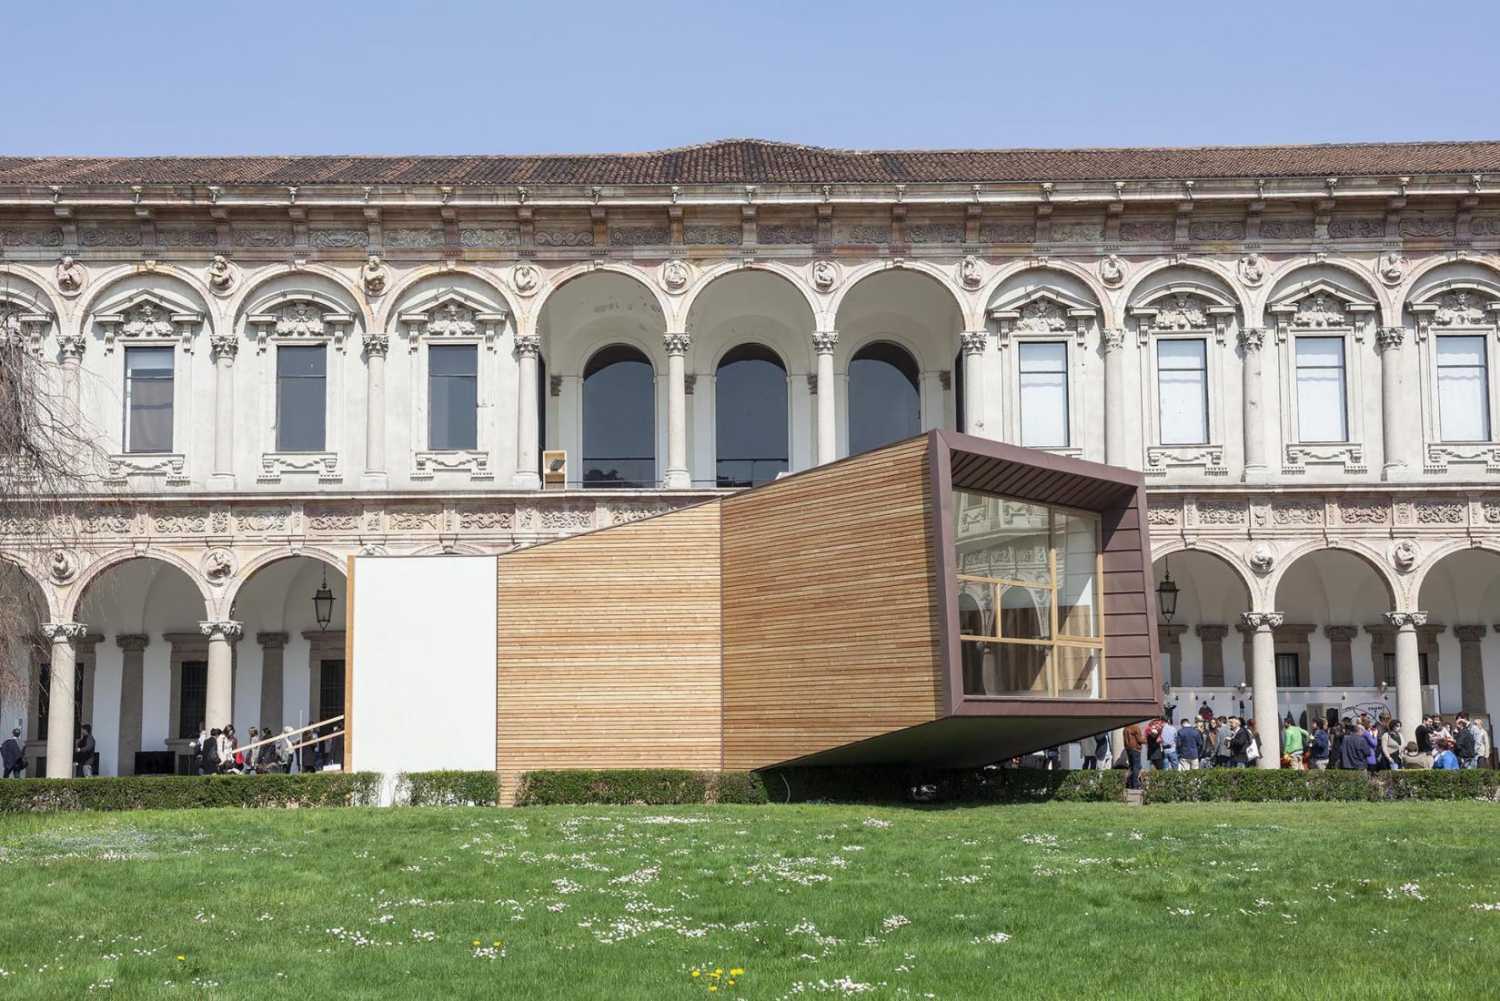 Installation en bois, un symbole à Milan. La vue frontière entre l'intérieur et l'extérieur